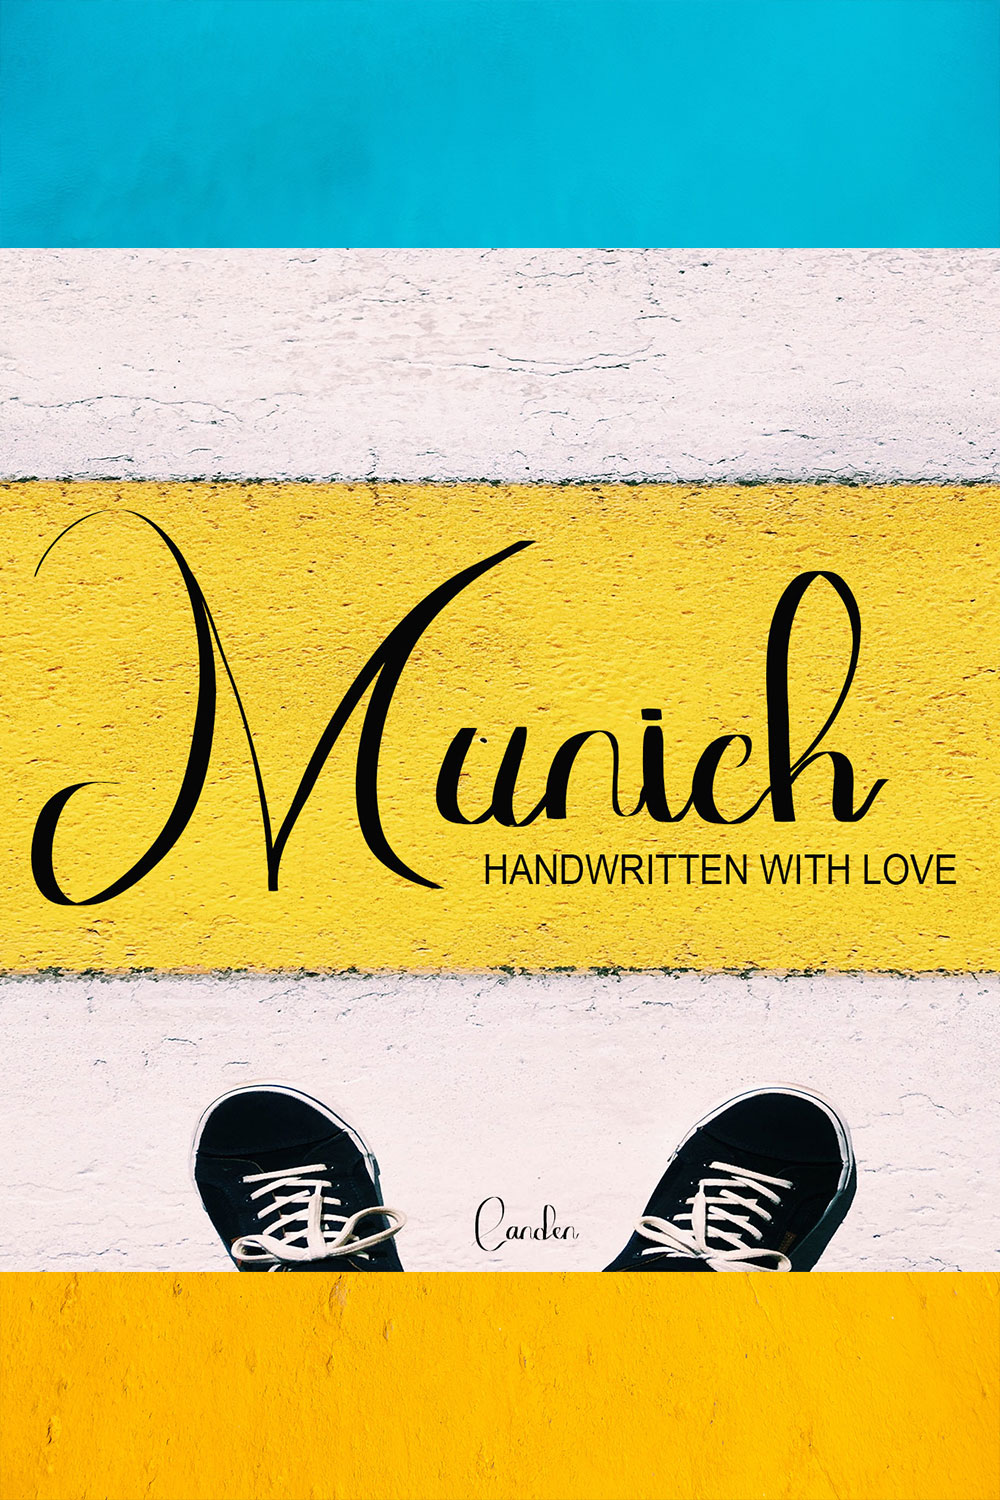 Munich Sans Serif Font Pinterest image.